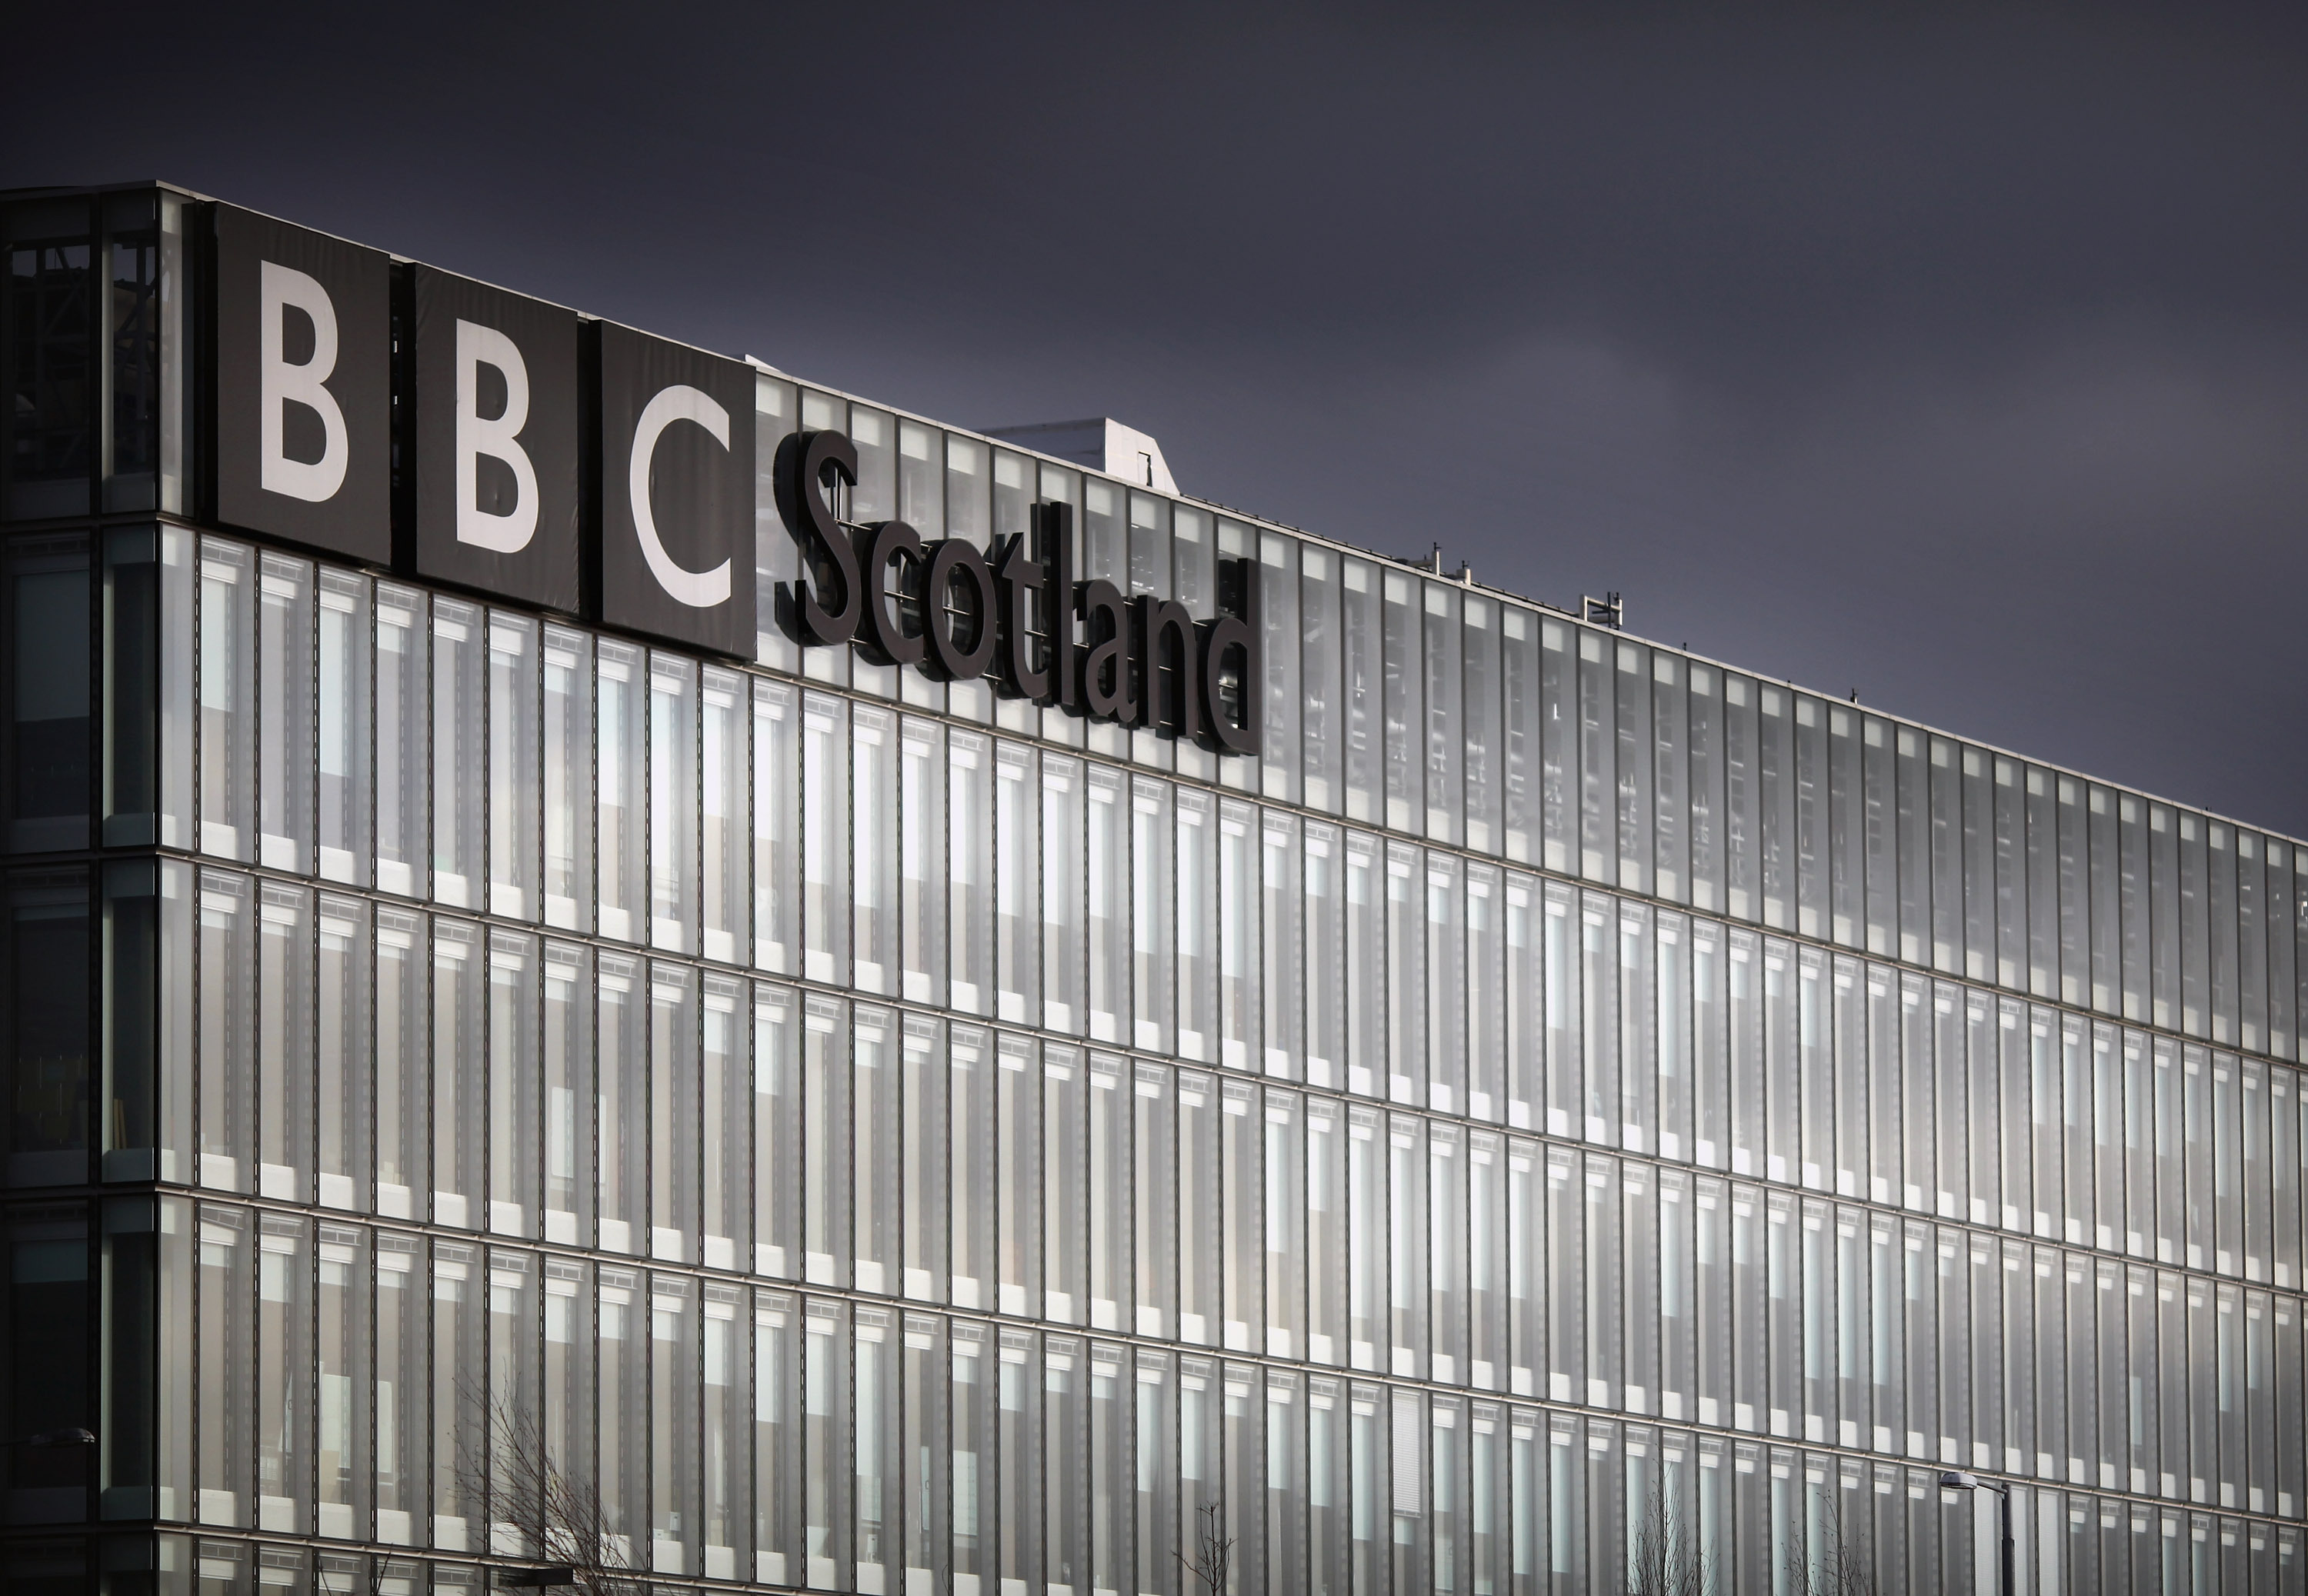 BBC-Chefs haben eine Untersuchung der Belästigungsvorwürfe eingeleitet